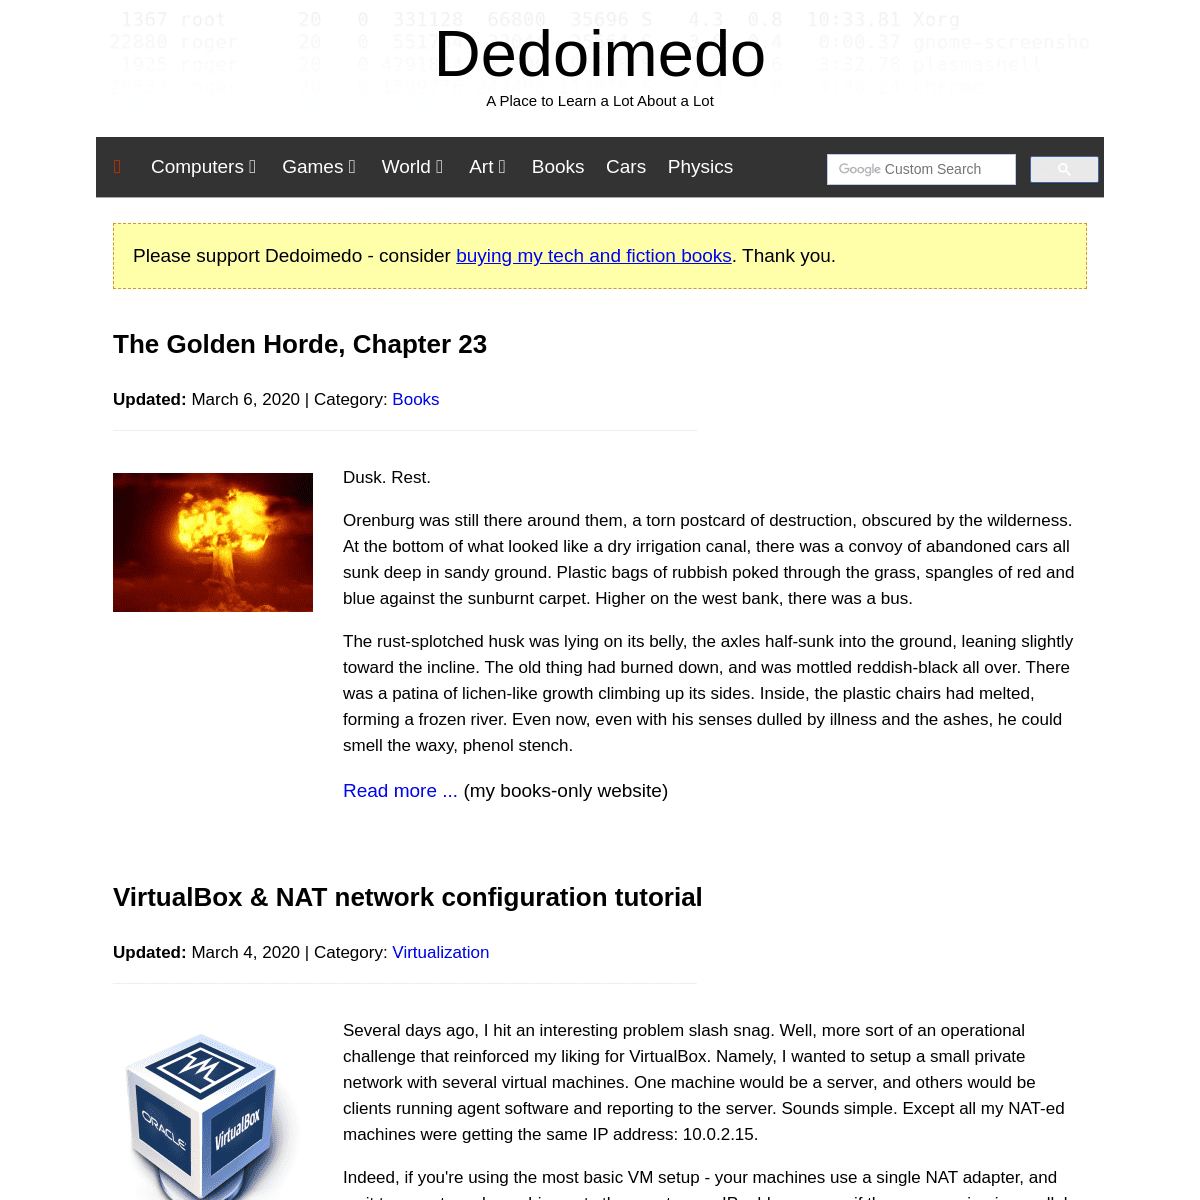 A complete backup of dedoimedo.com